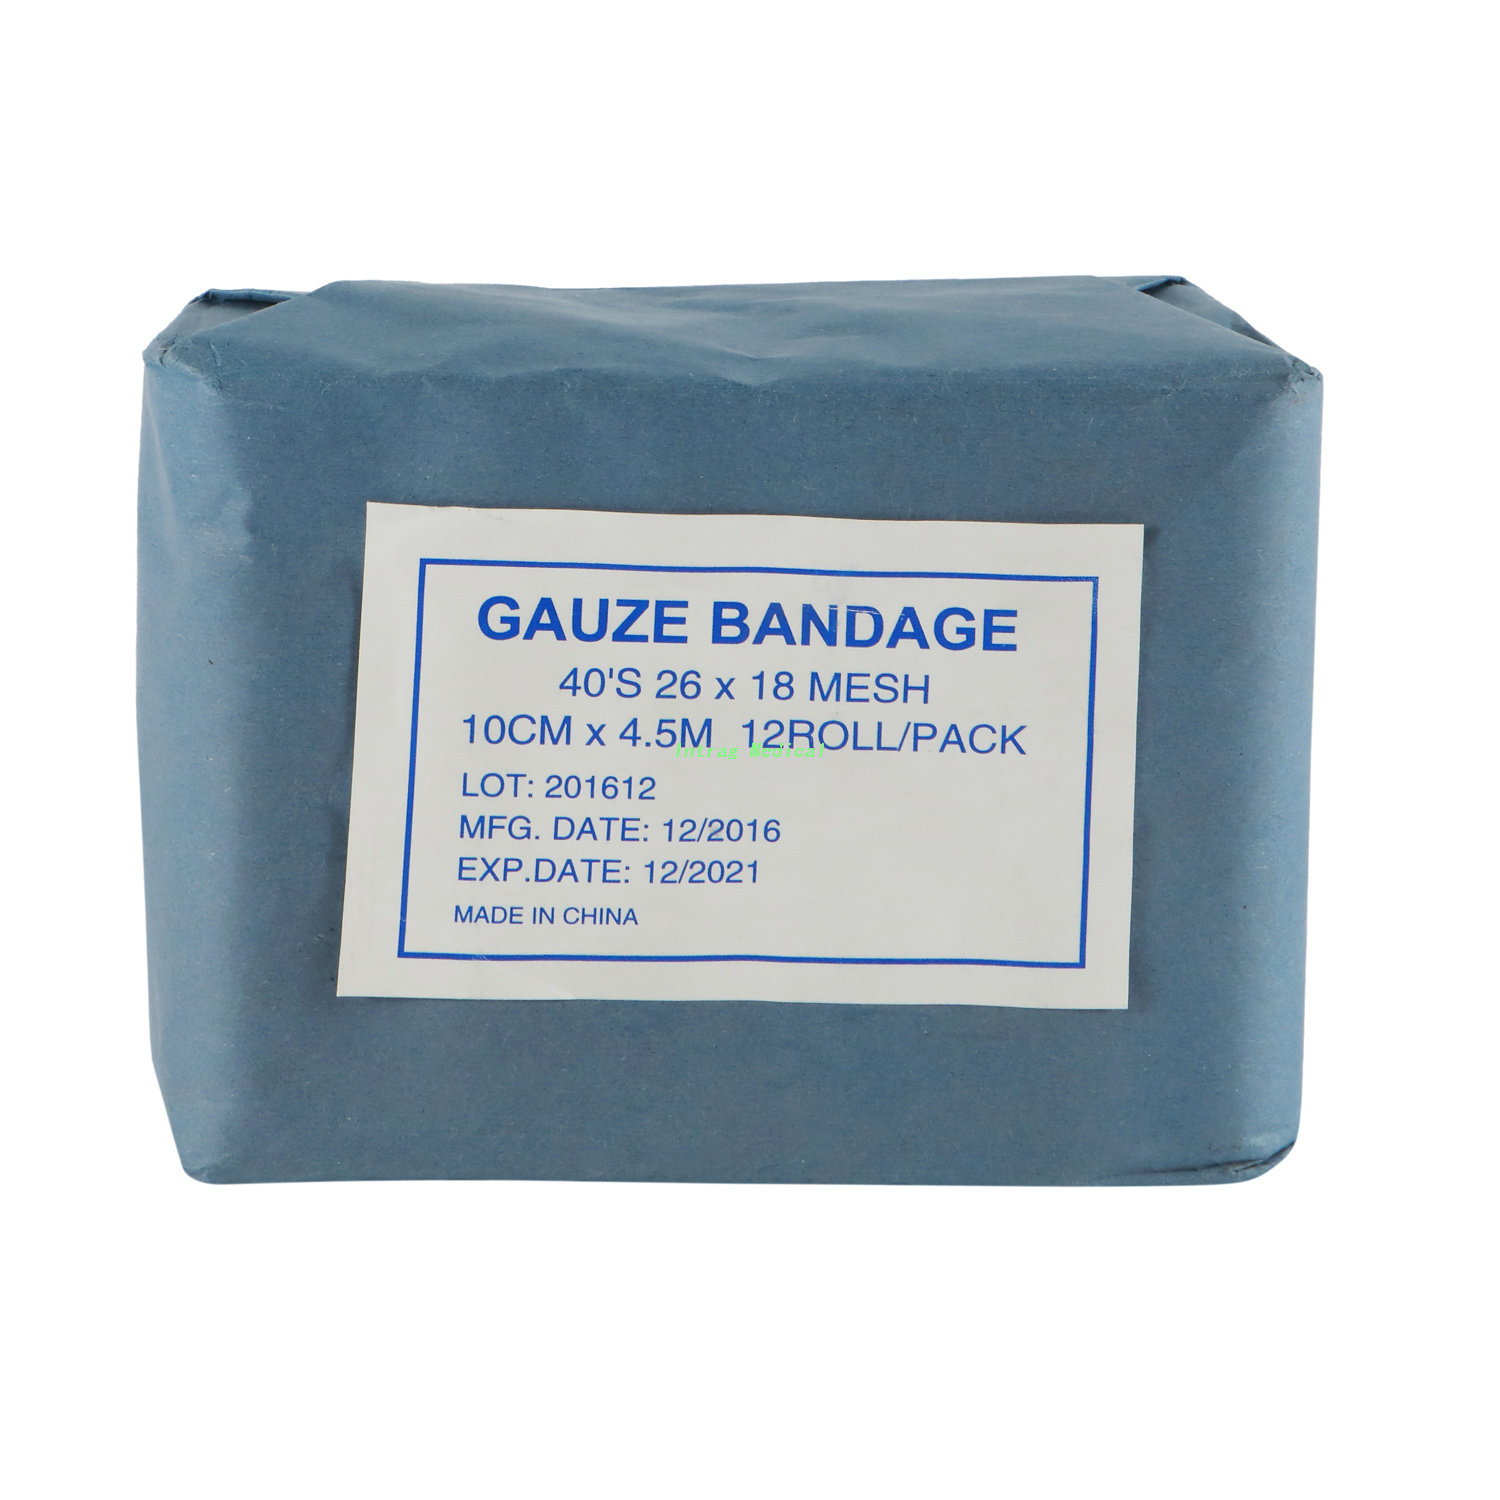 Gauze Bandage